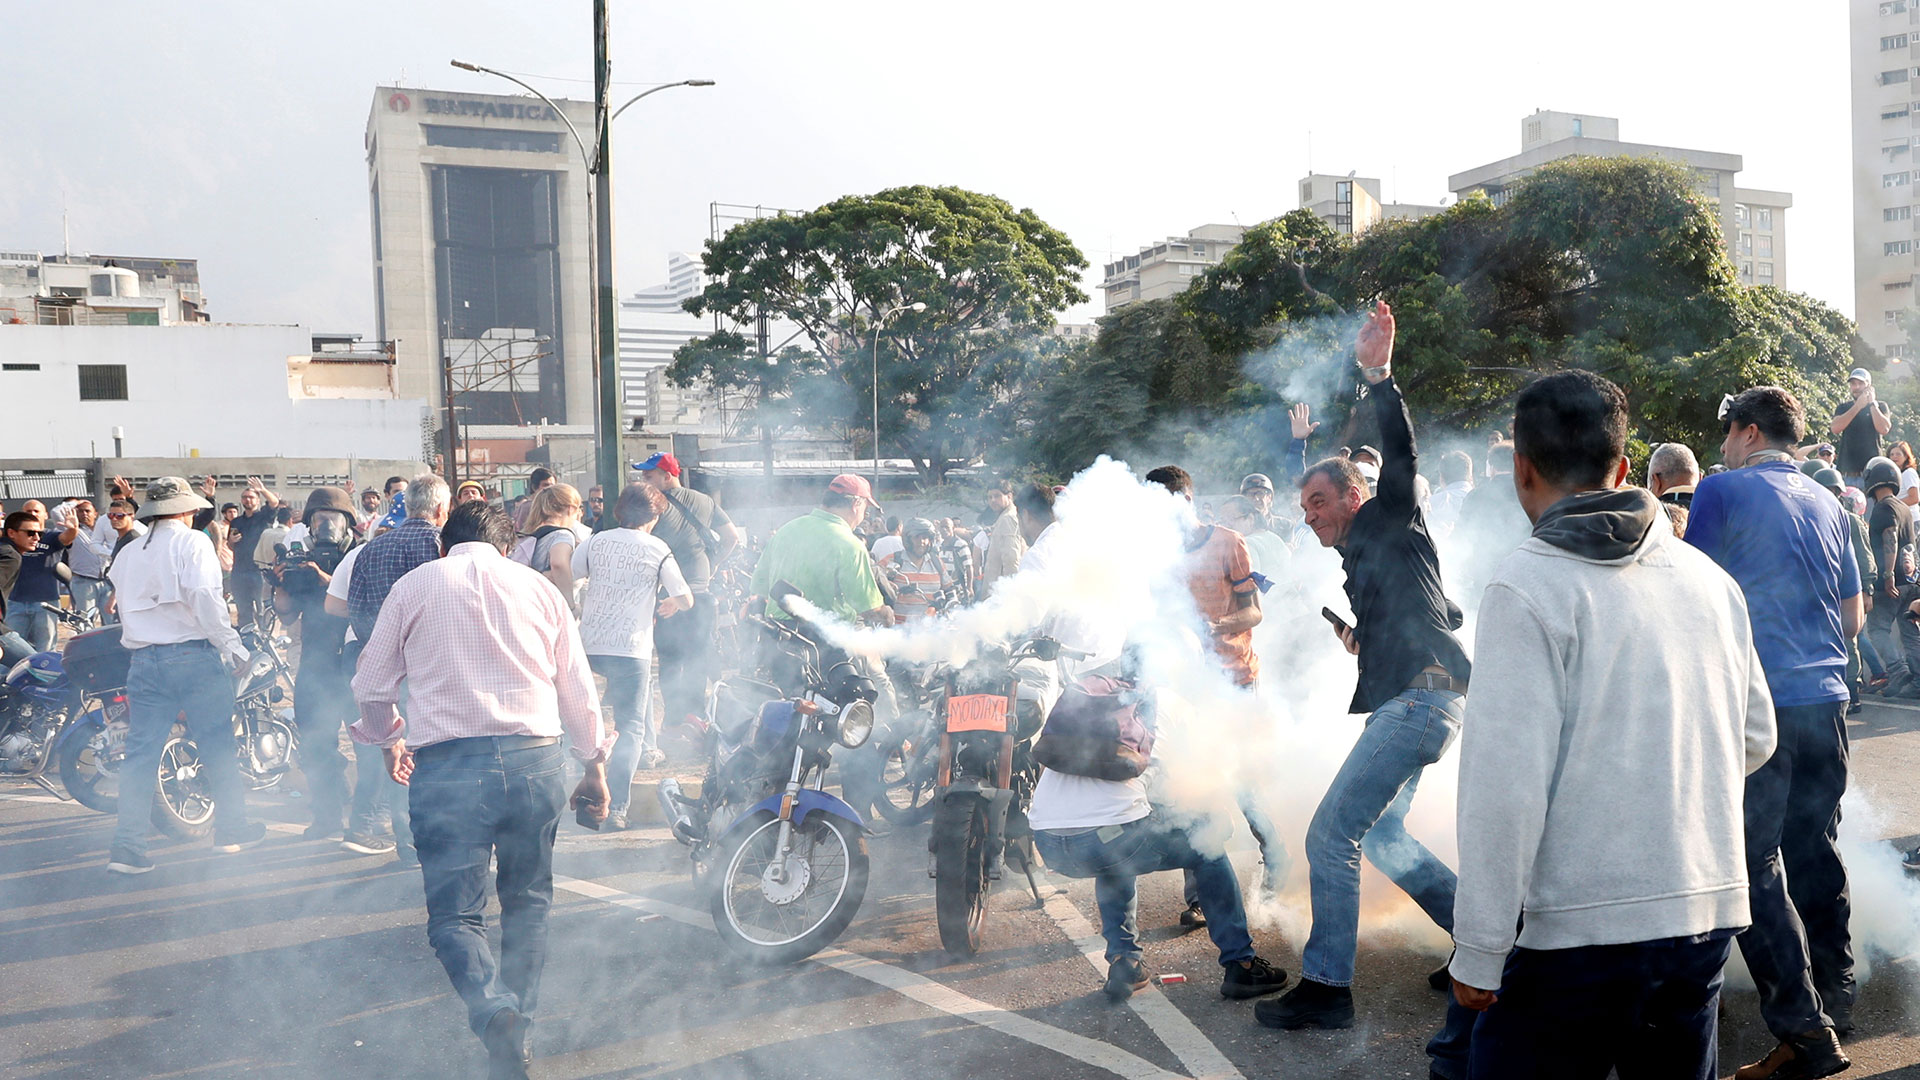 La gente reacciona al gas lacrimógeno cerca de la Base Aérea Generalísimo Francisco de Miranda “La Carlota”, en Caracas, Venezuela, el 30 de abril de 2019.